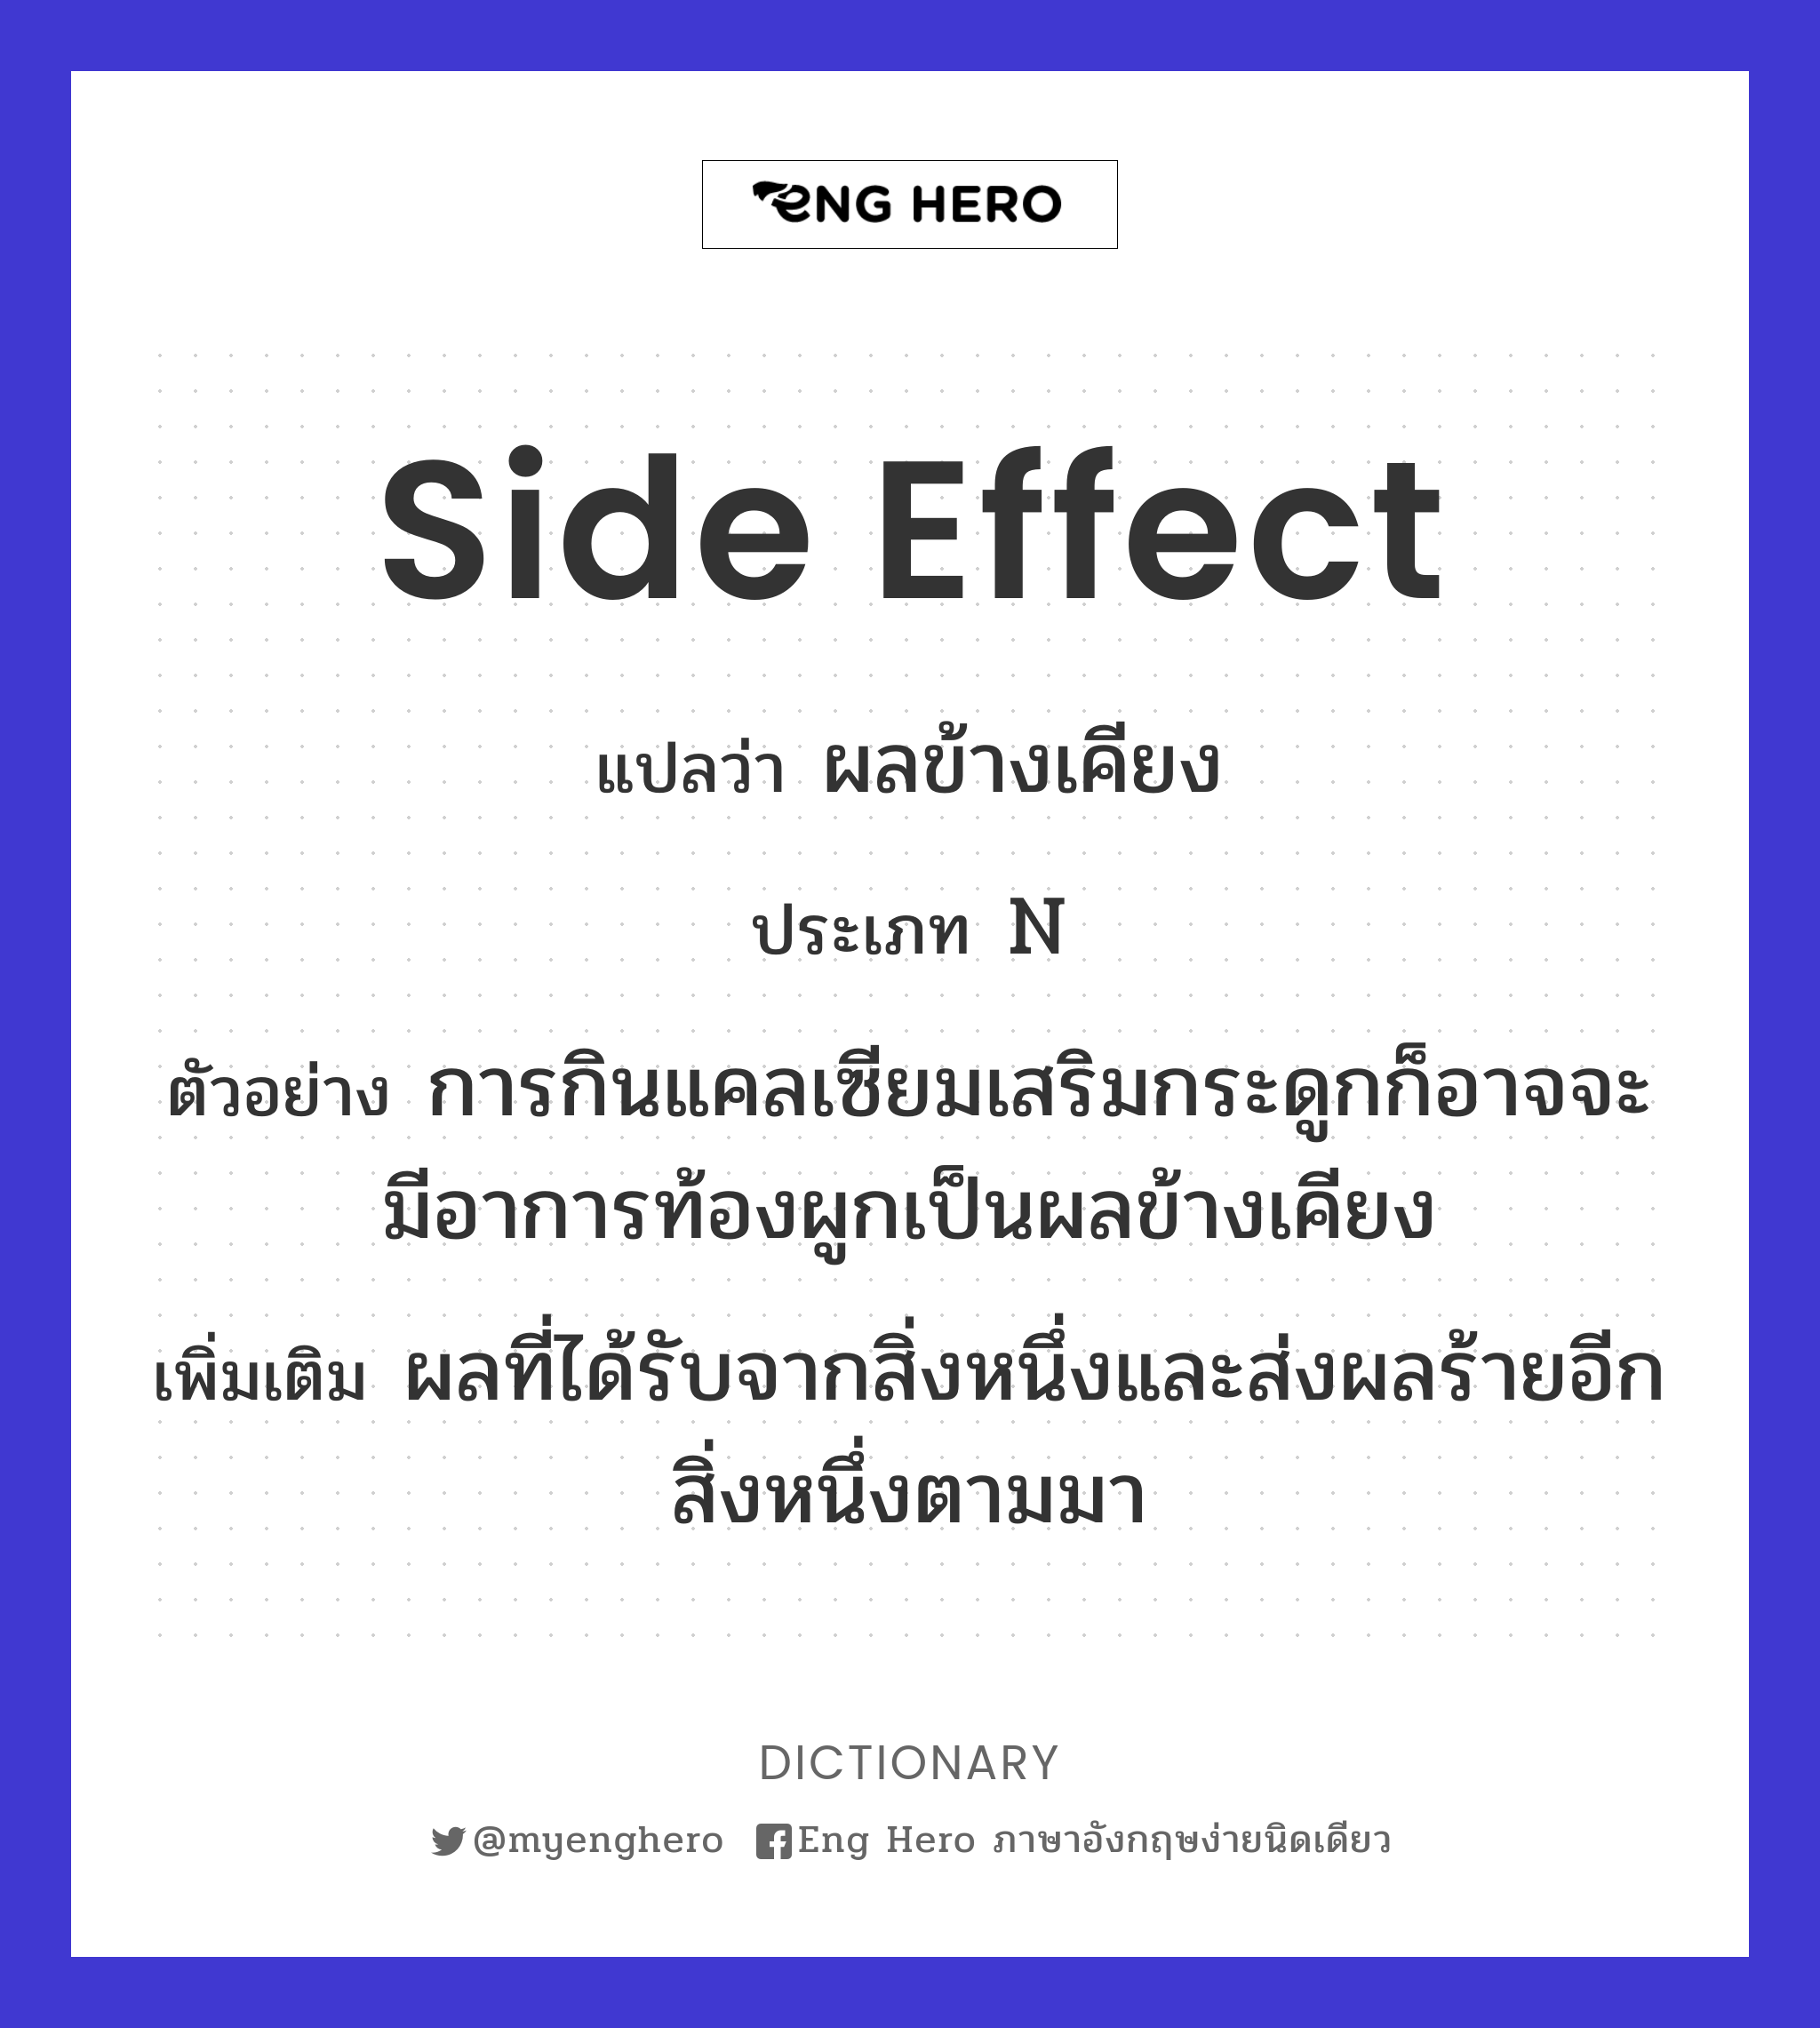 side effect